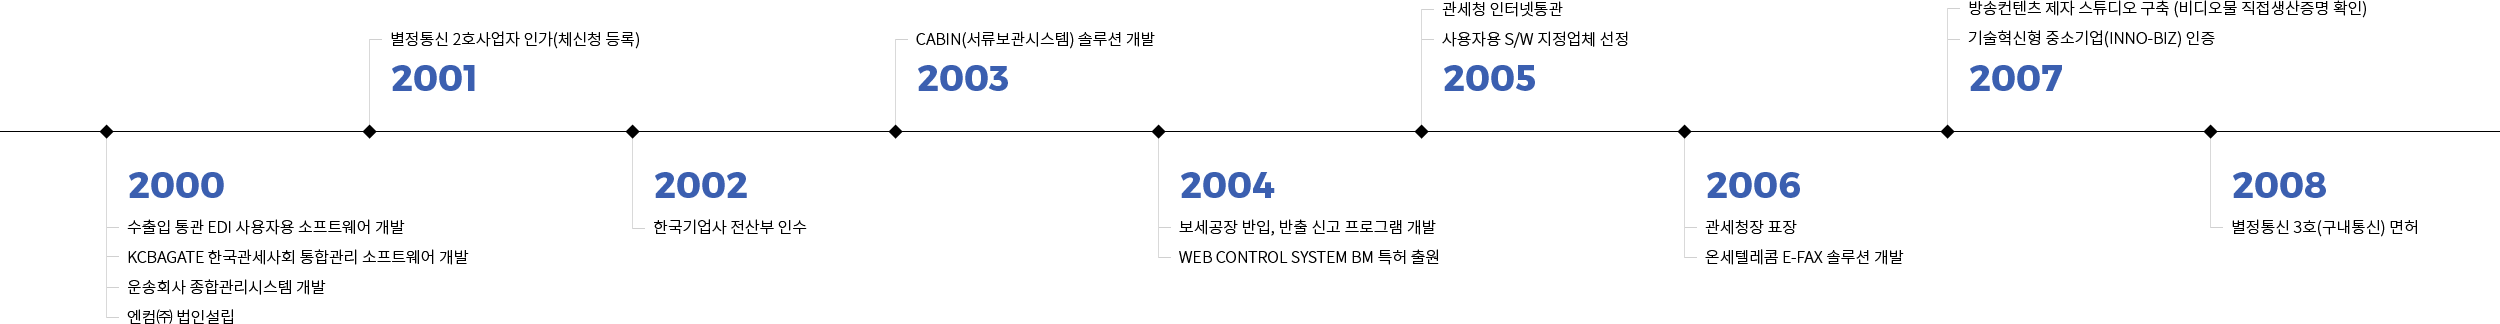 2000~2008